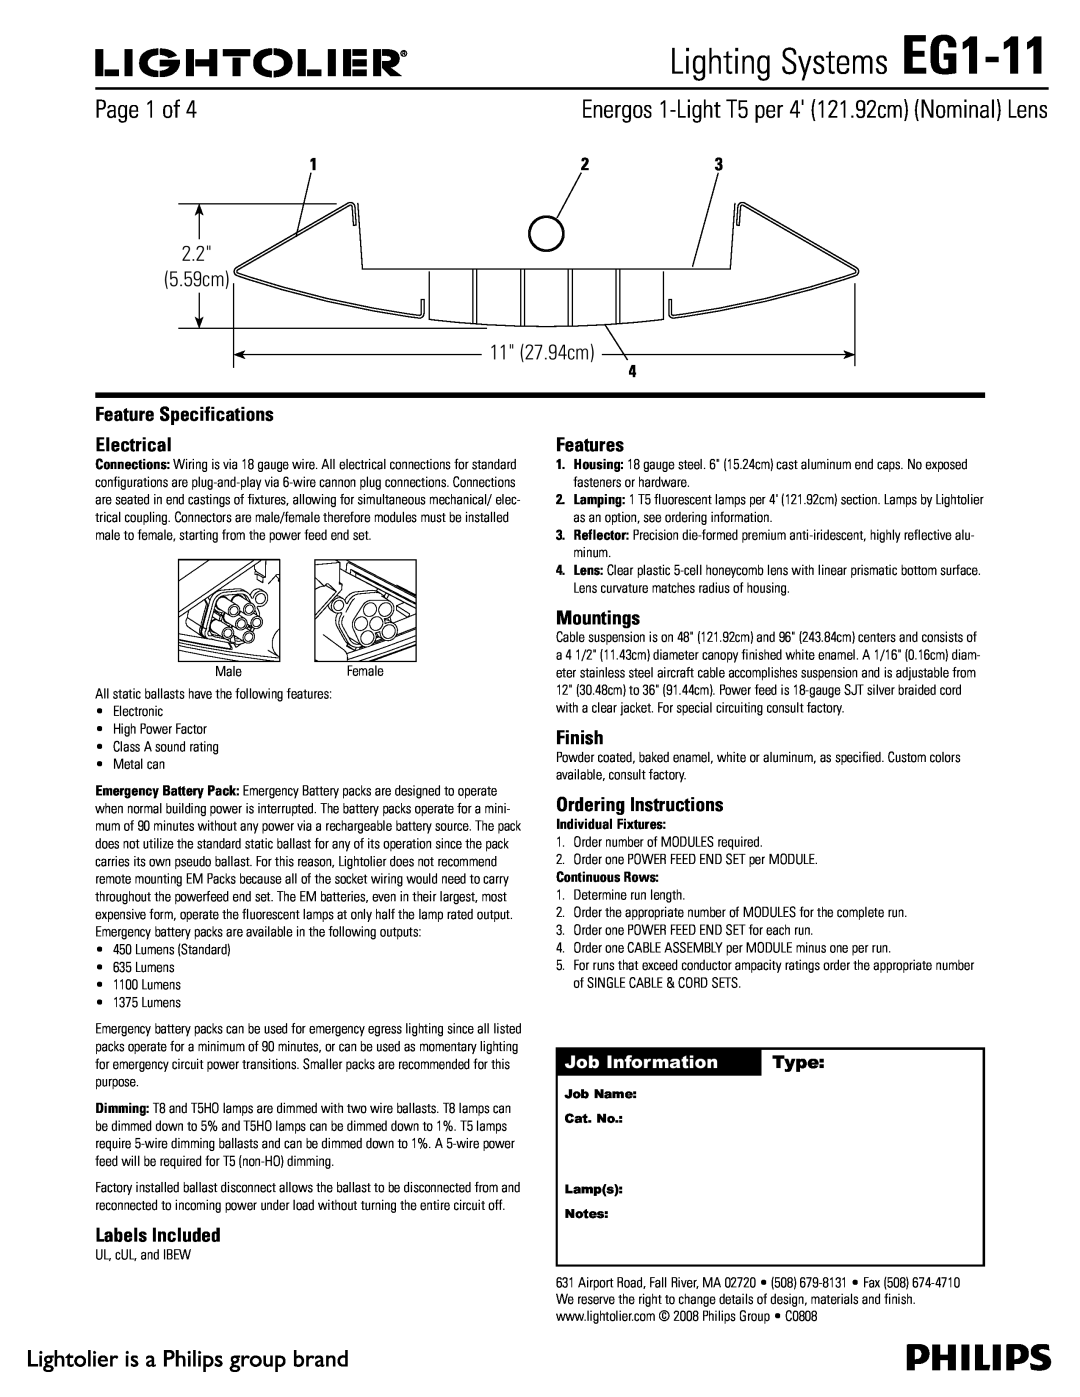 Lightolier specifications Lighting Systems EG1-11,  Dn  Dn, Job Information, Type 